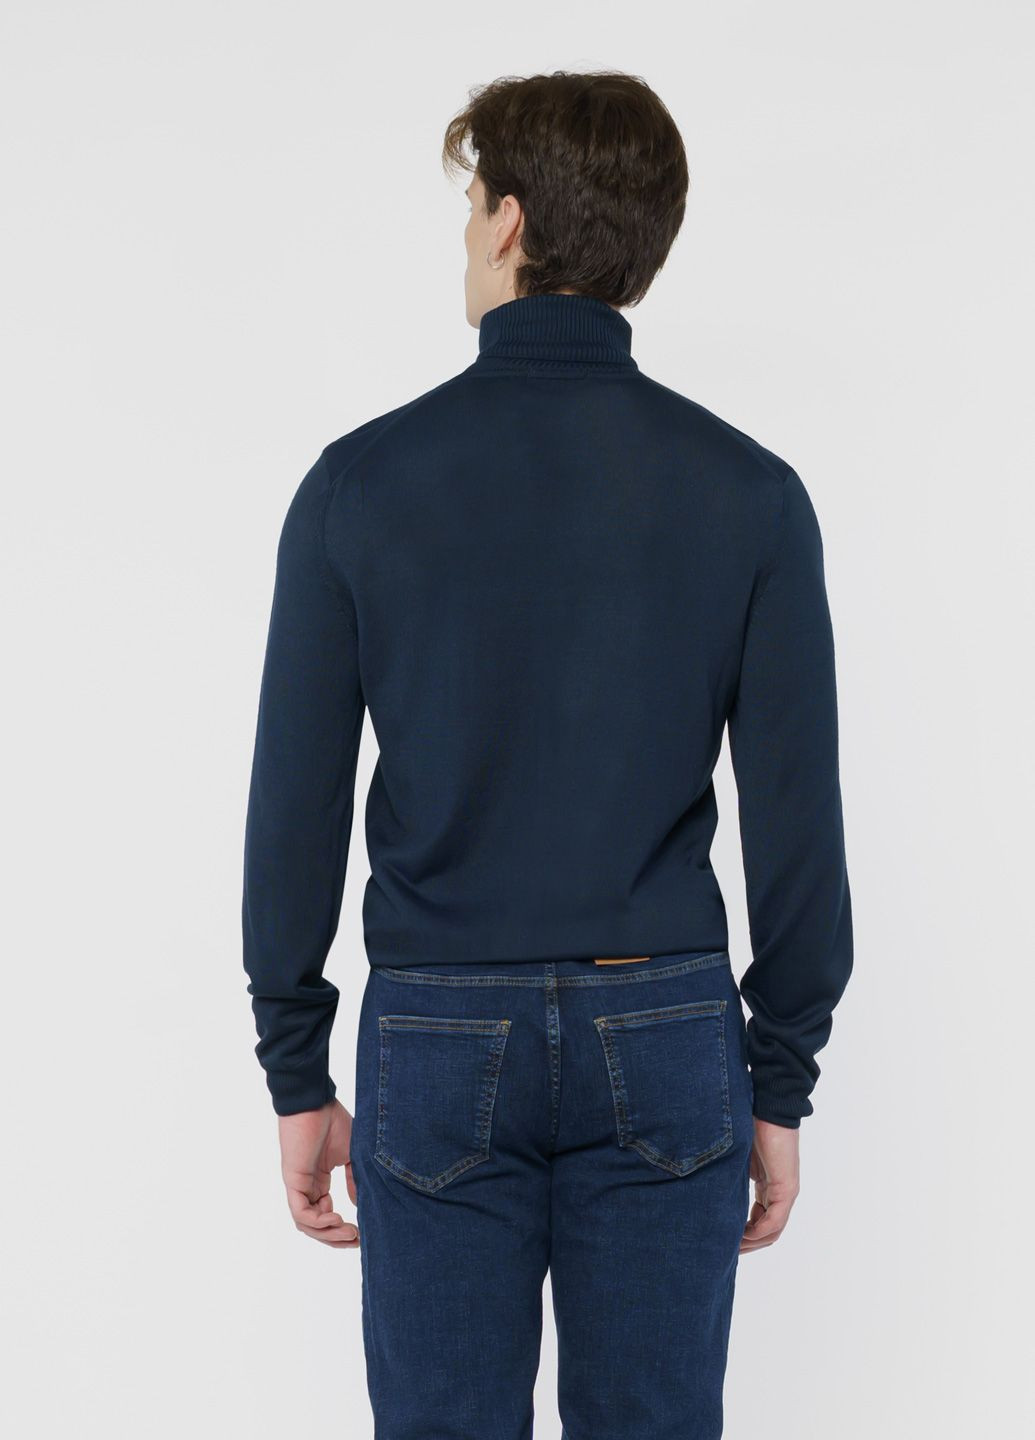 Синий зимний свитер мужской темно-синий Arber Roll-neck FF AVT49